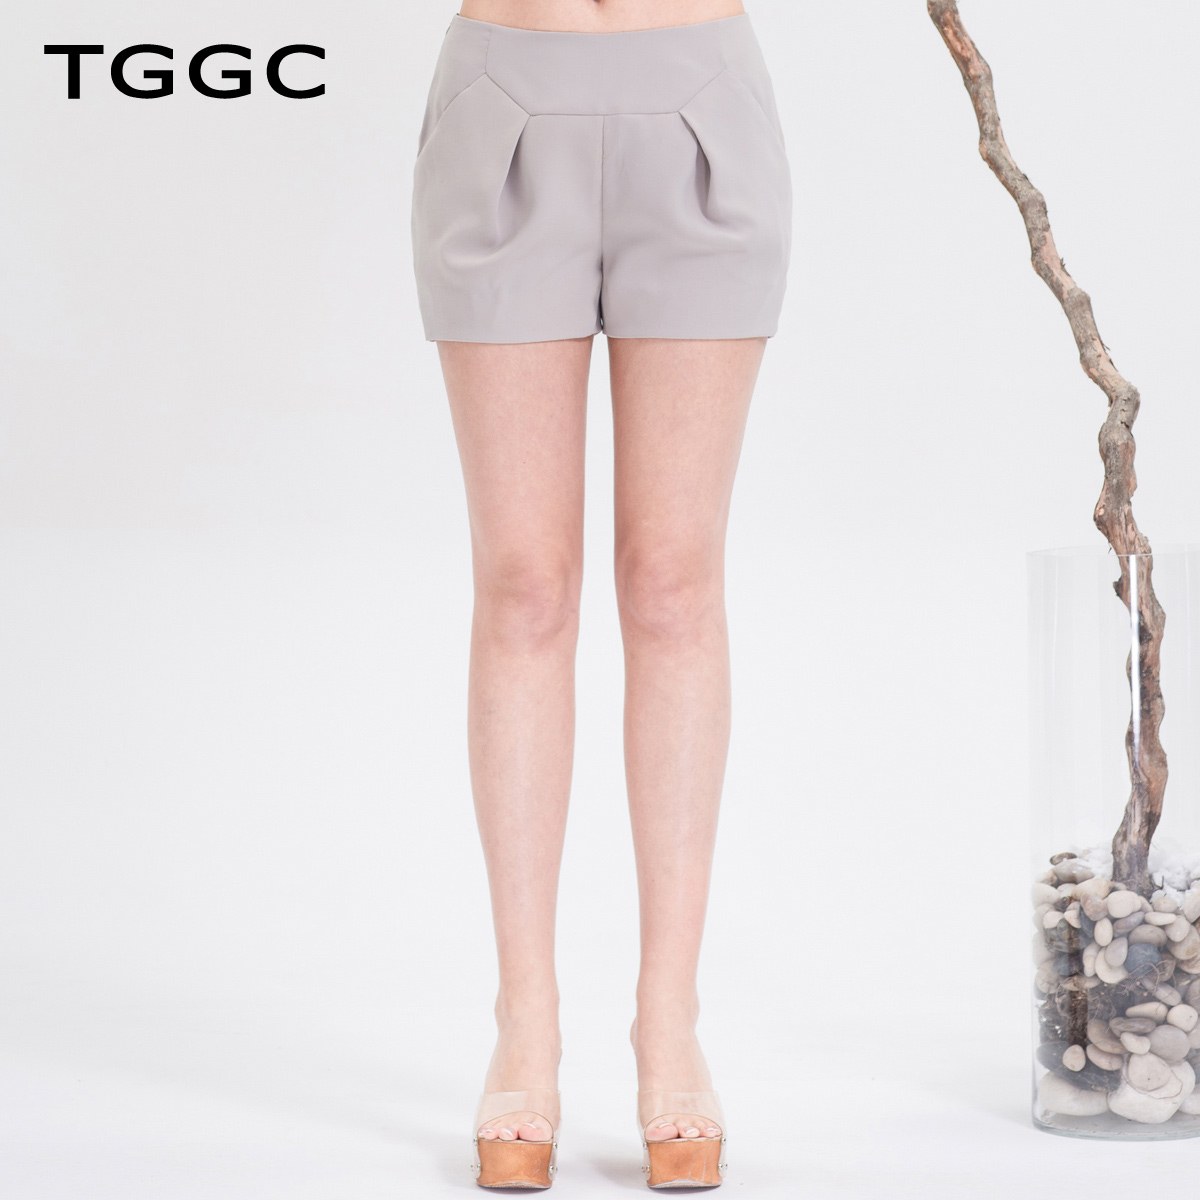 TGGC 2015夏装 立体褶皱显瘦热裤纯色百搭休闲裤子女短裤P12879